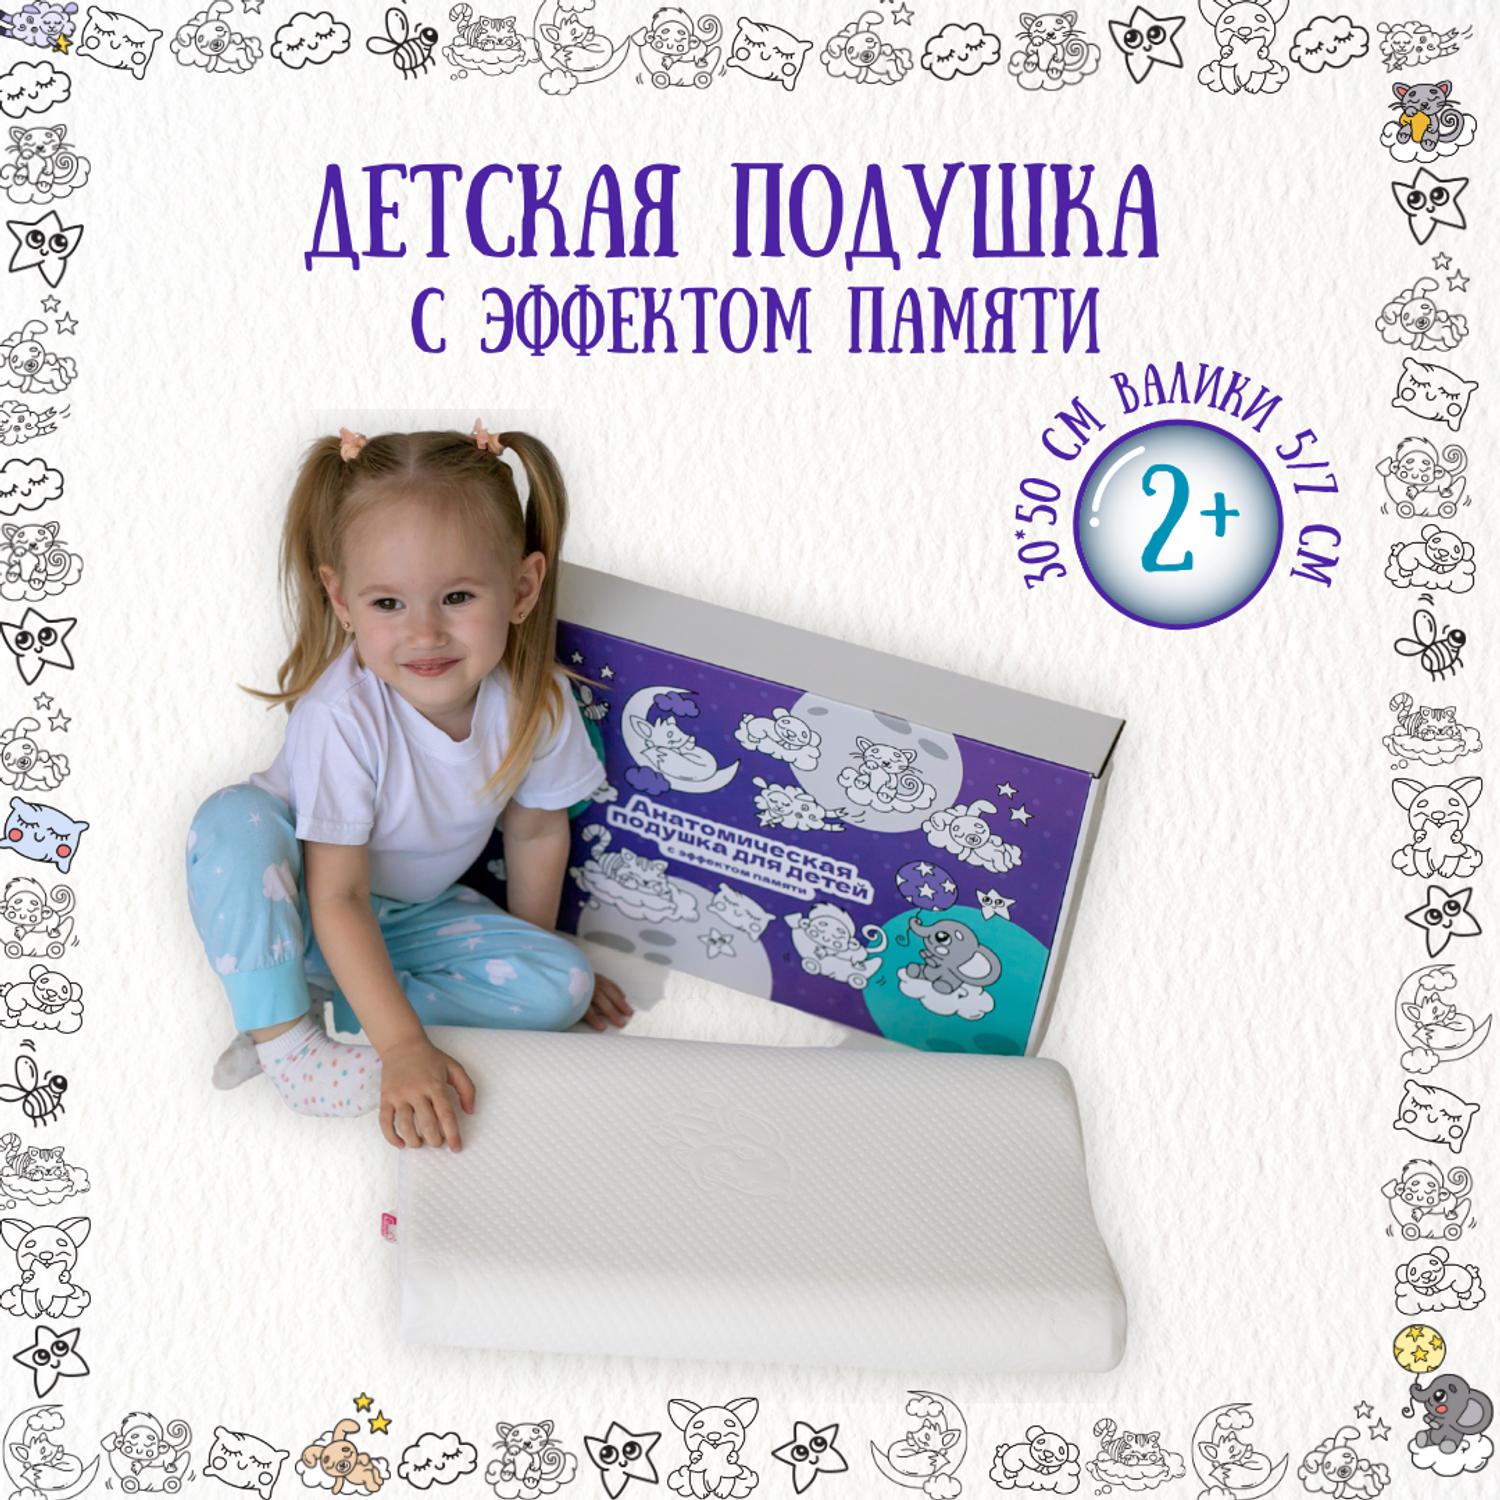 Детские подушки в Москве : отзывы, цены, заказ онлайн | Аскона